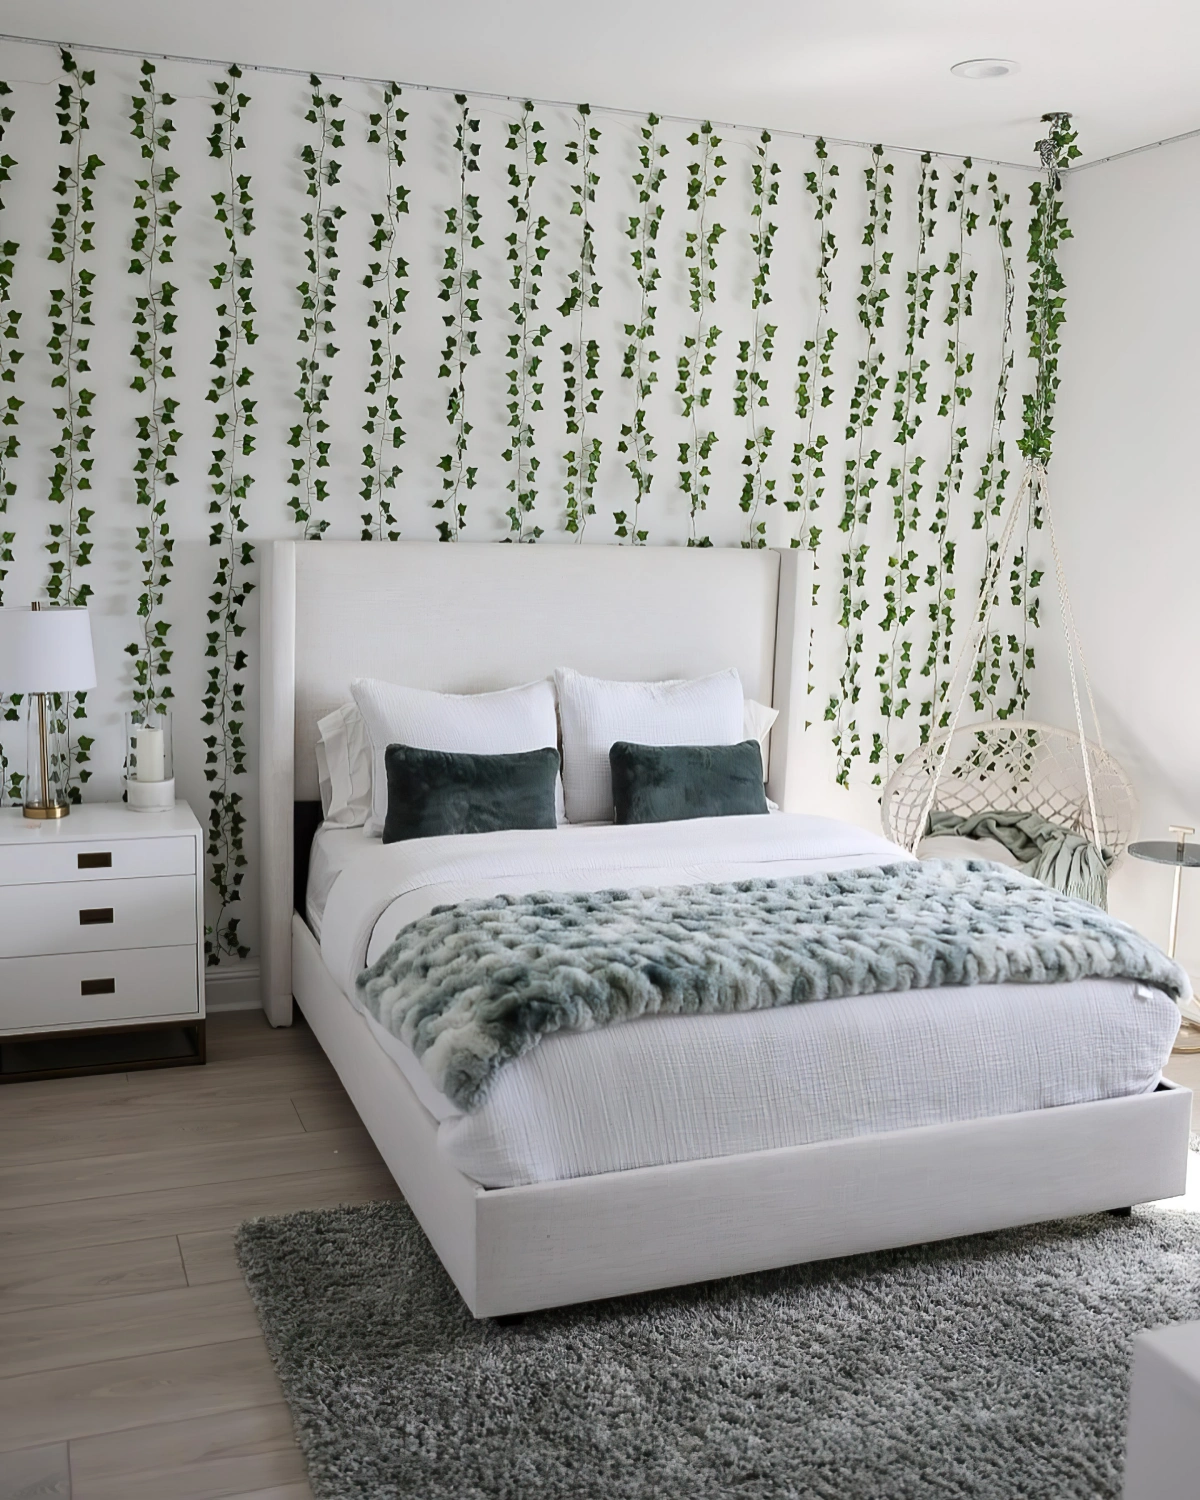 decoration murale chambre avec guirlande feuilles vertes led tete de lit tissu